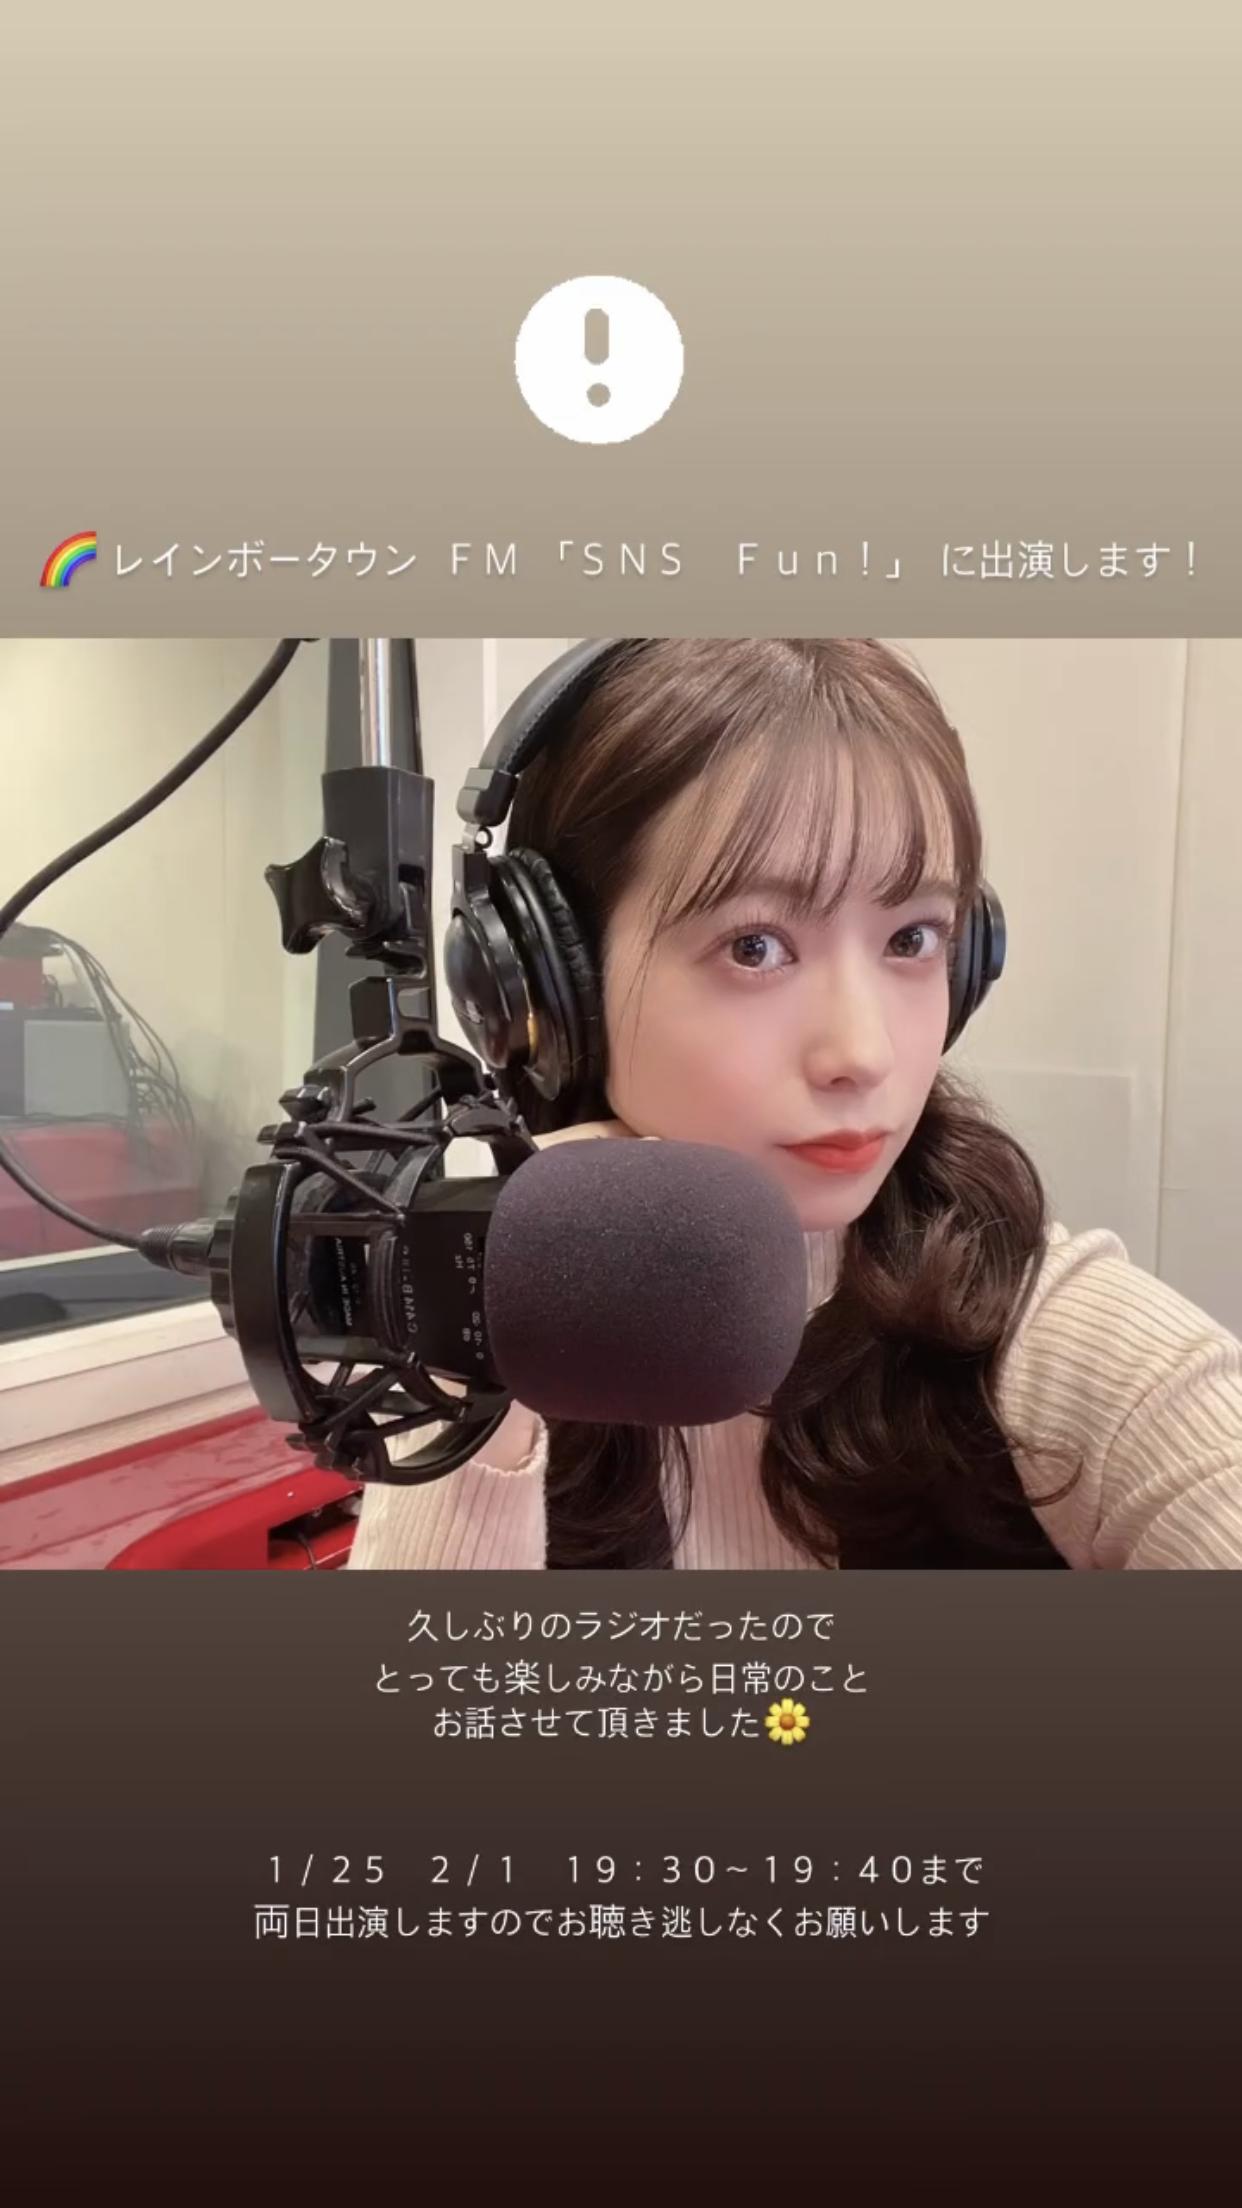 斉藤優里 レインボータウンFM「SNS FUN!」